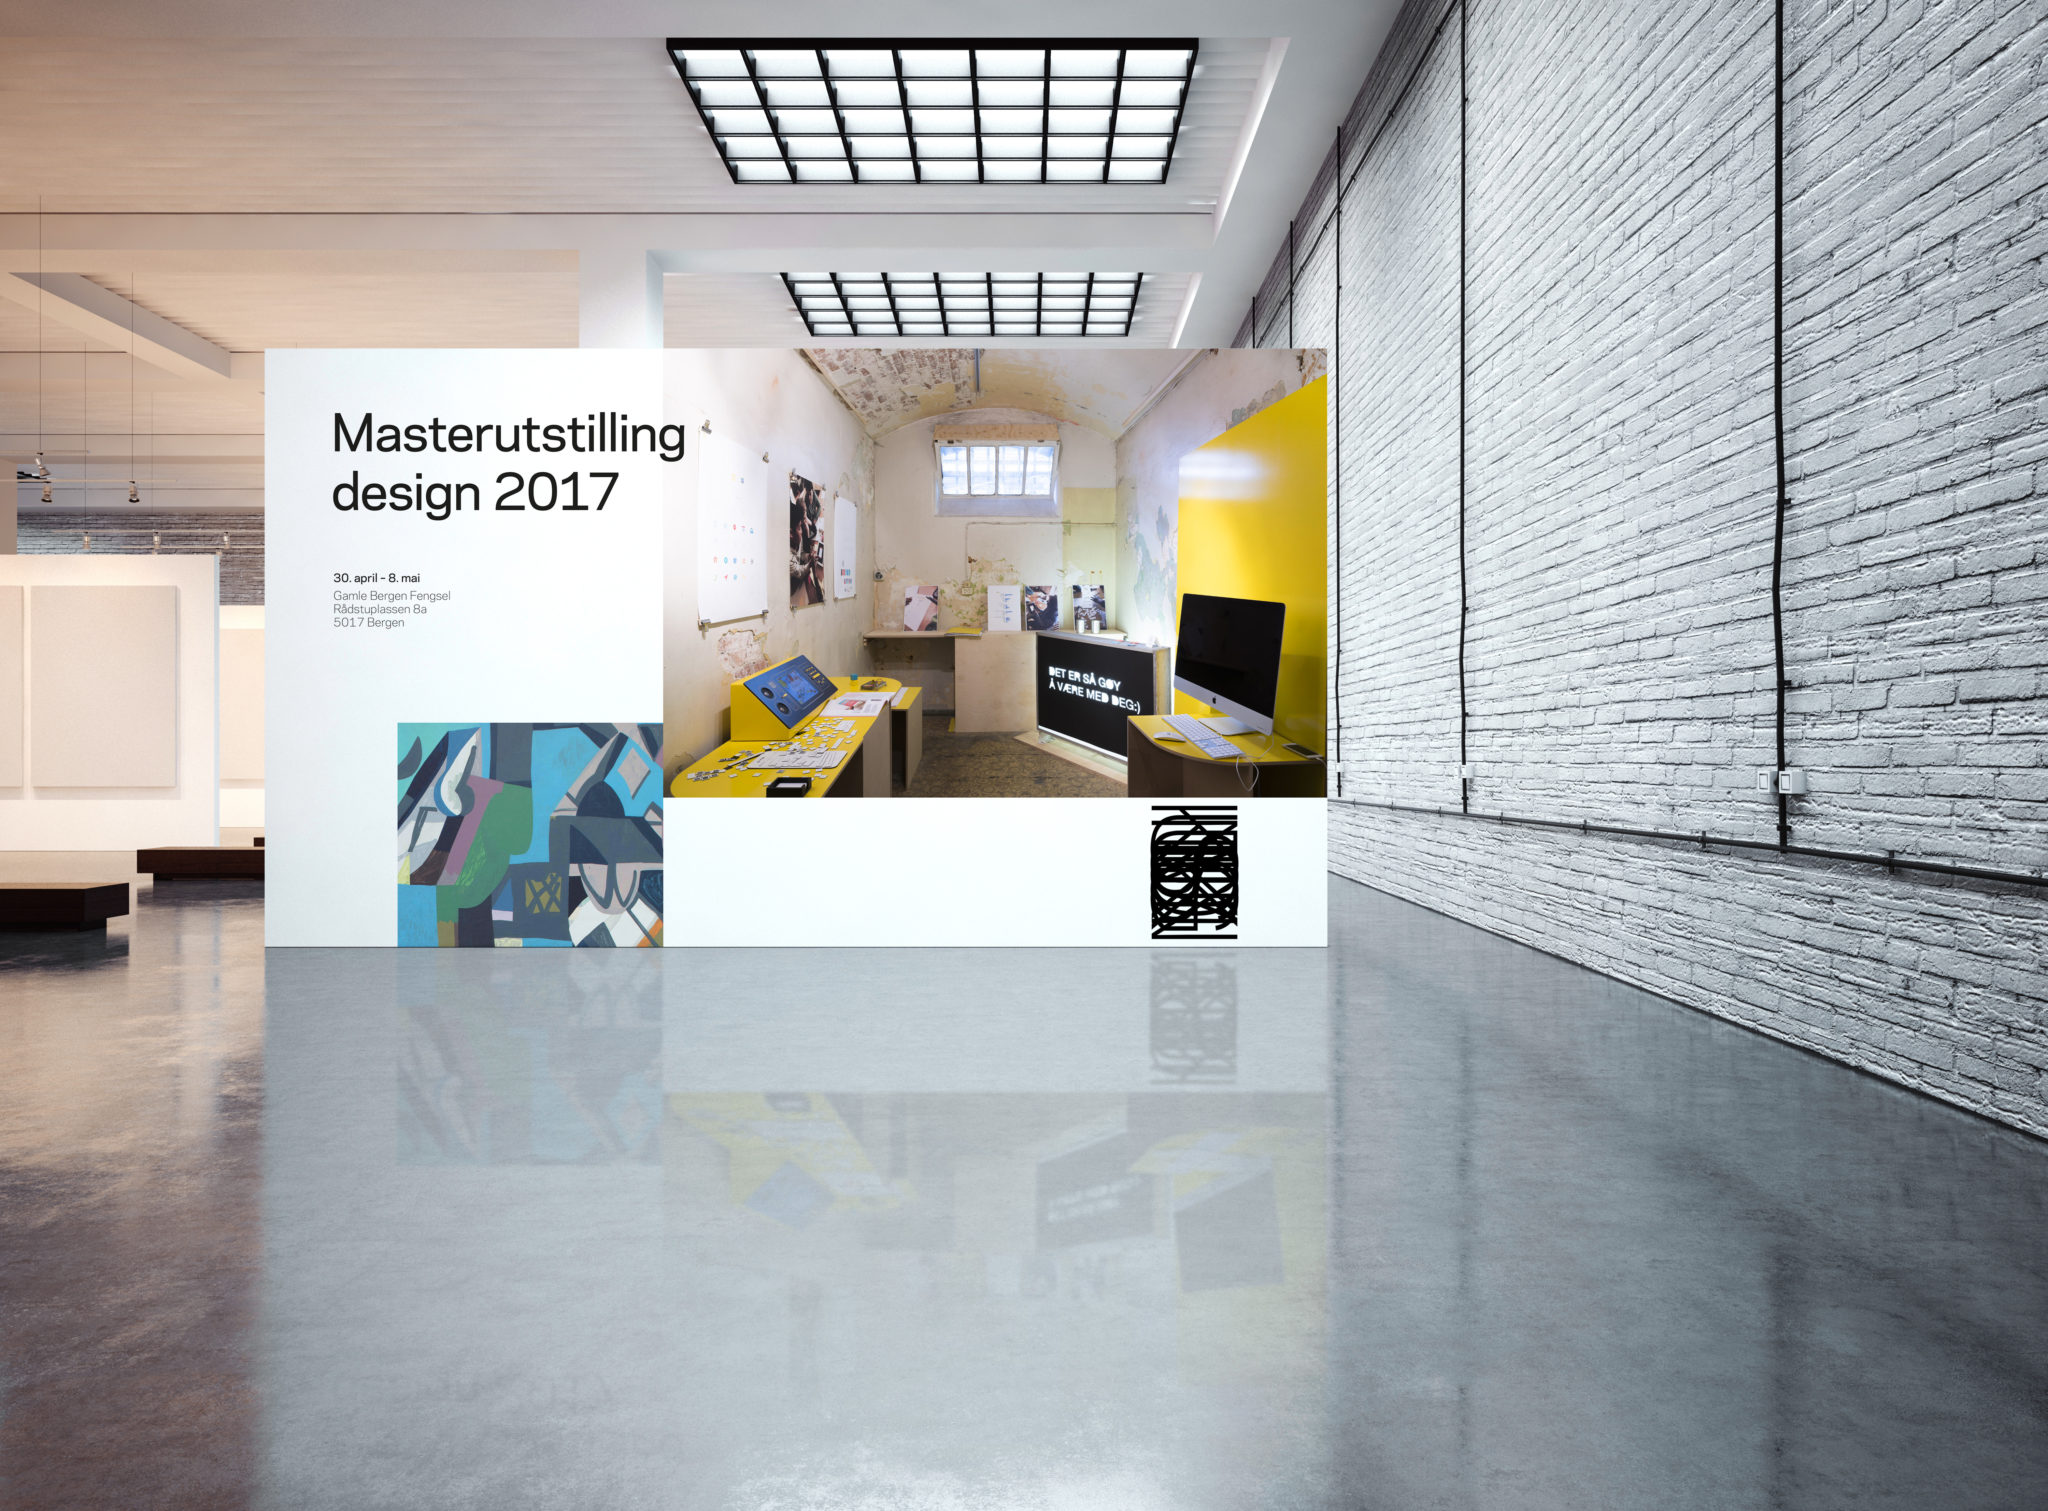 Stor veggdekor som presenterer masterutstilling i design 2017